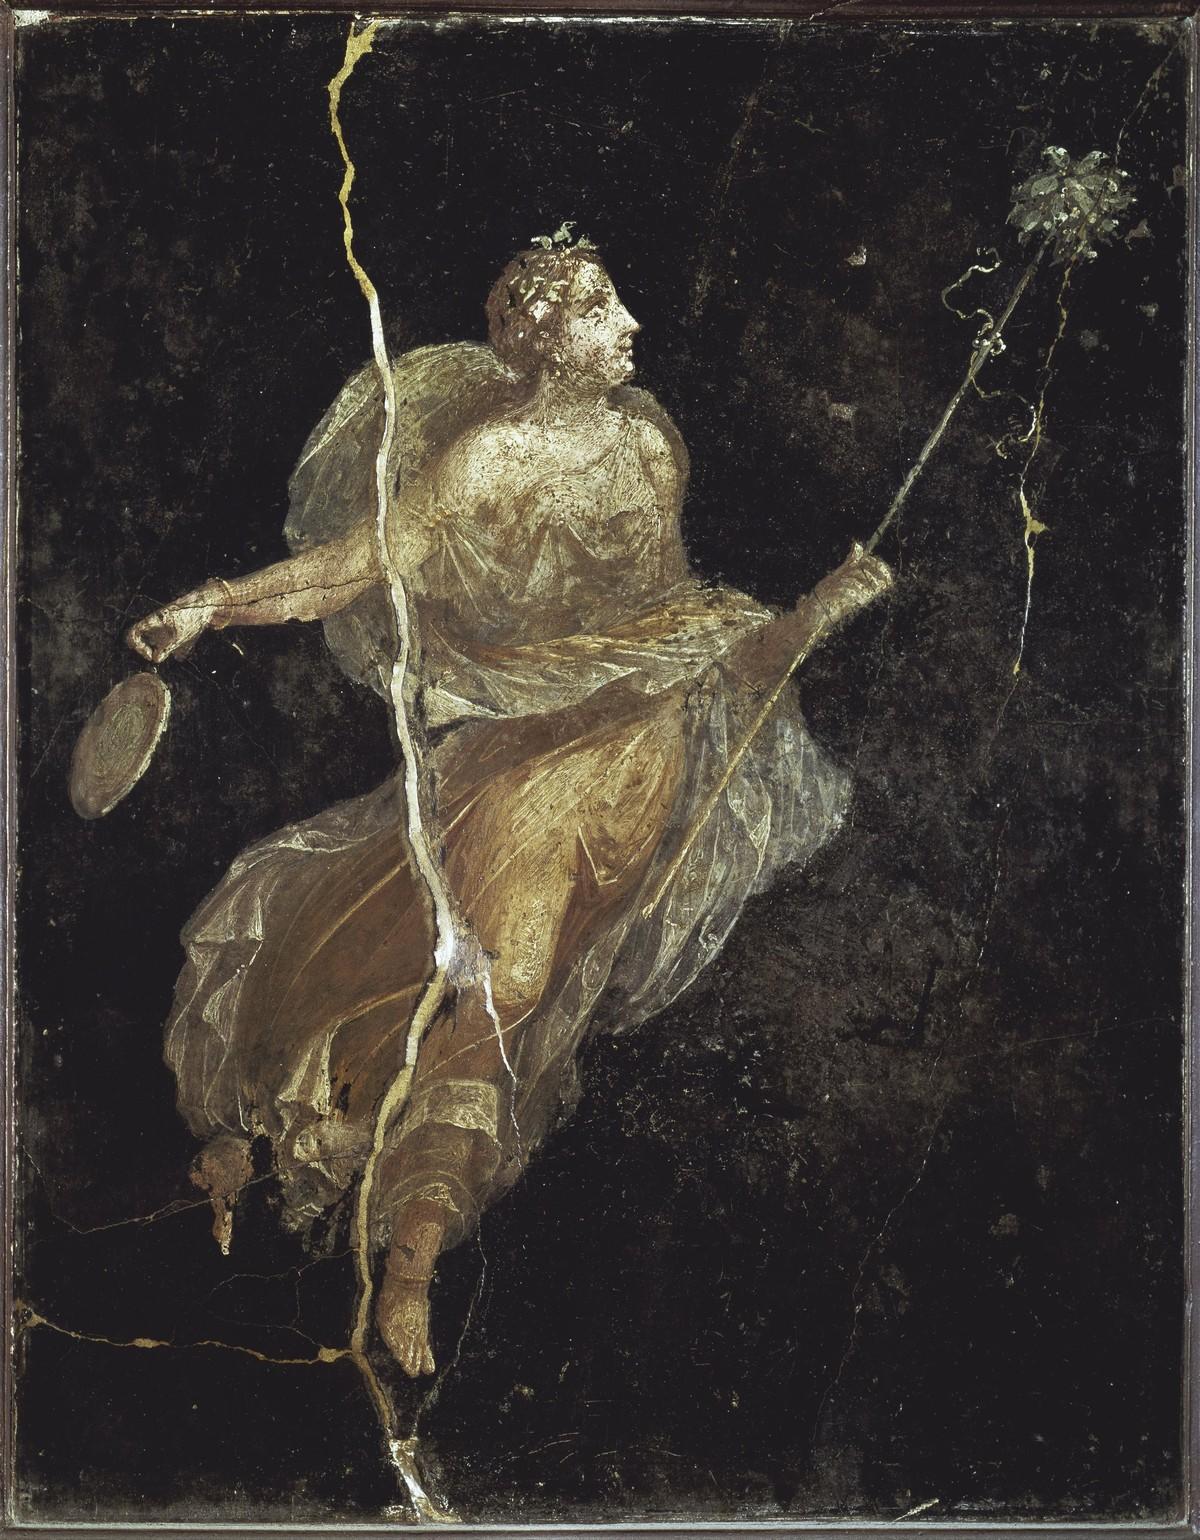 Bacchante (prêtresse de Bacchus, dieu du vin) dans une robe de soie, fresque de Pompéi, Iᵉ siècle après J.C. (musée de Naples).